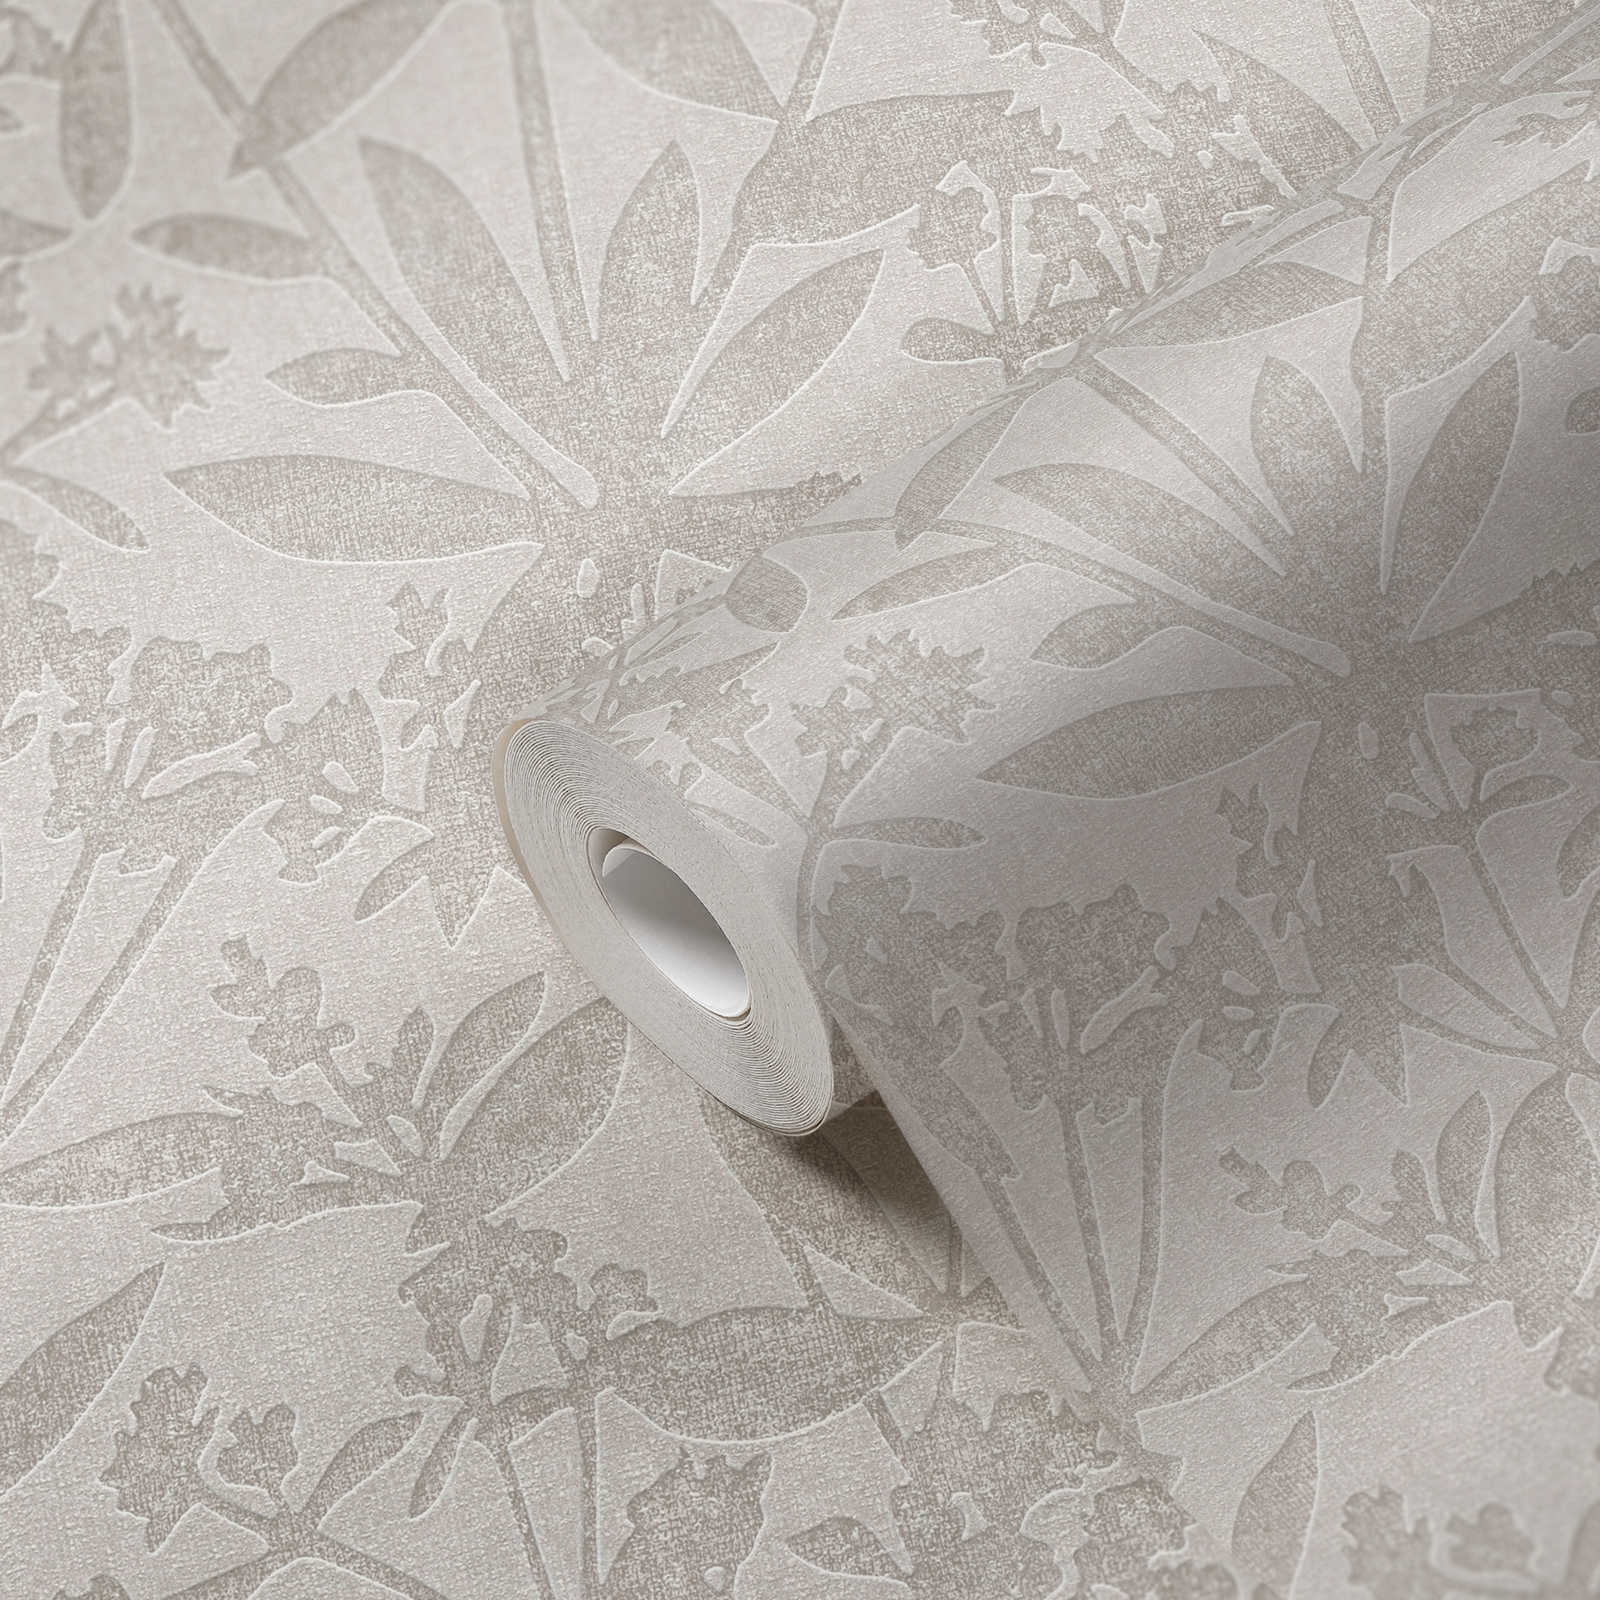             Papier peint non tissé floral fleurs et feuilles - gris, beige
        